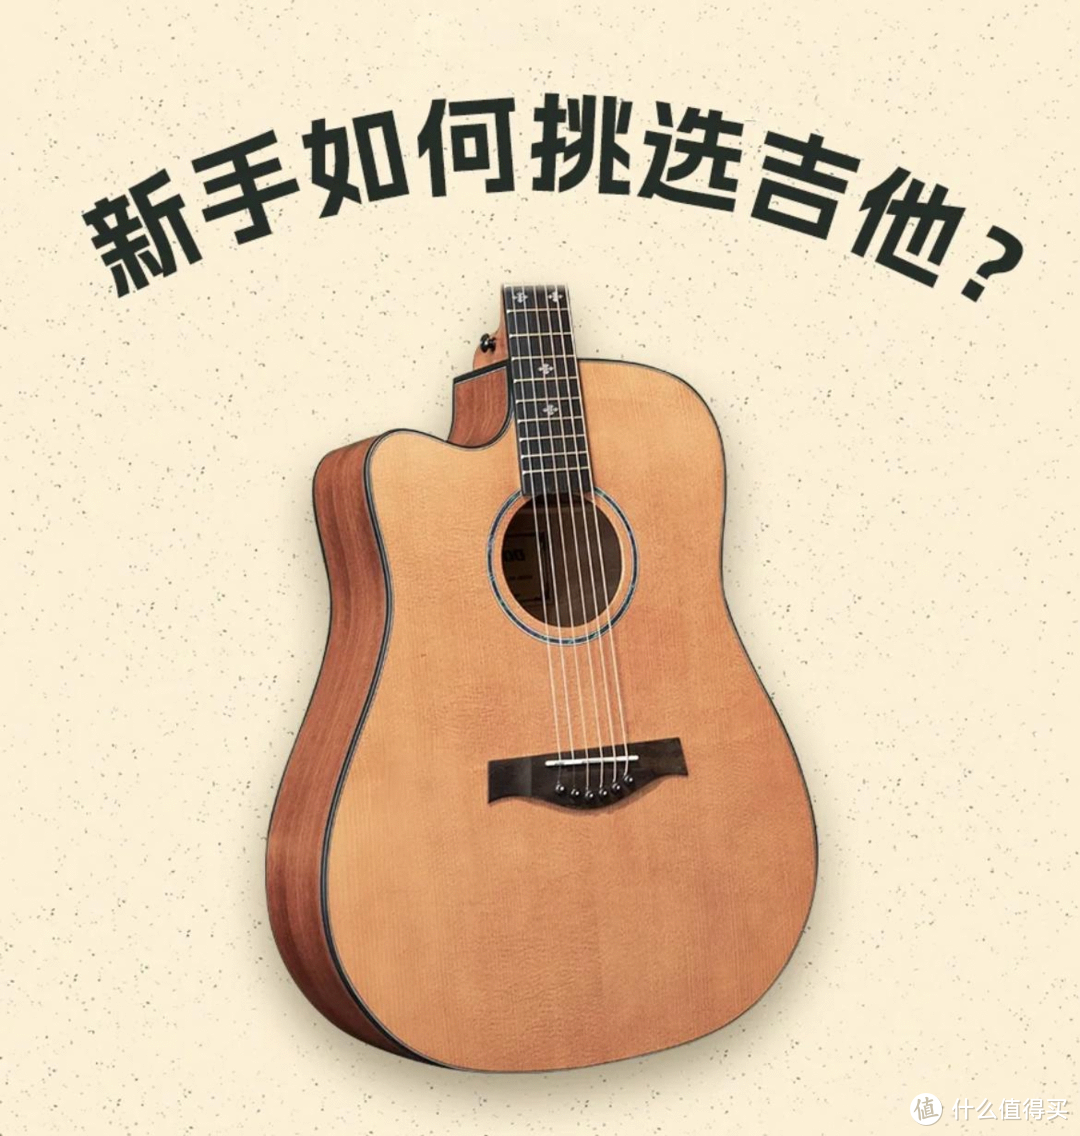 关于吉他的选购 有没有什么好的品牌推荐？